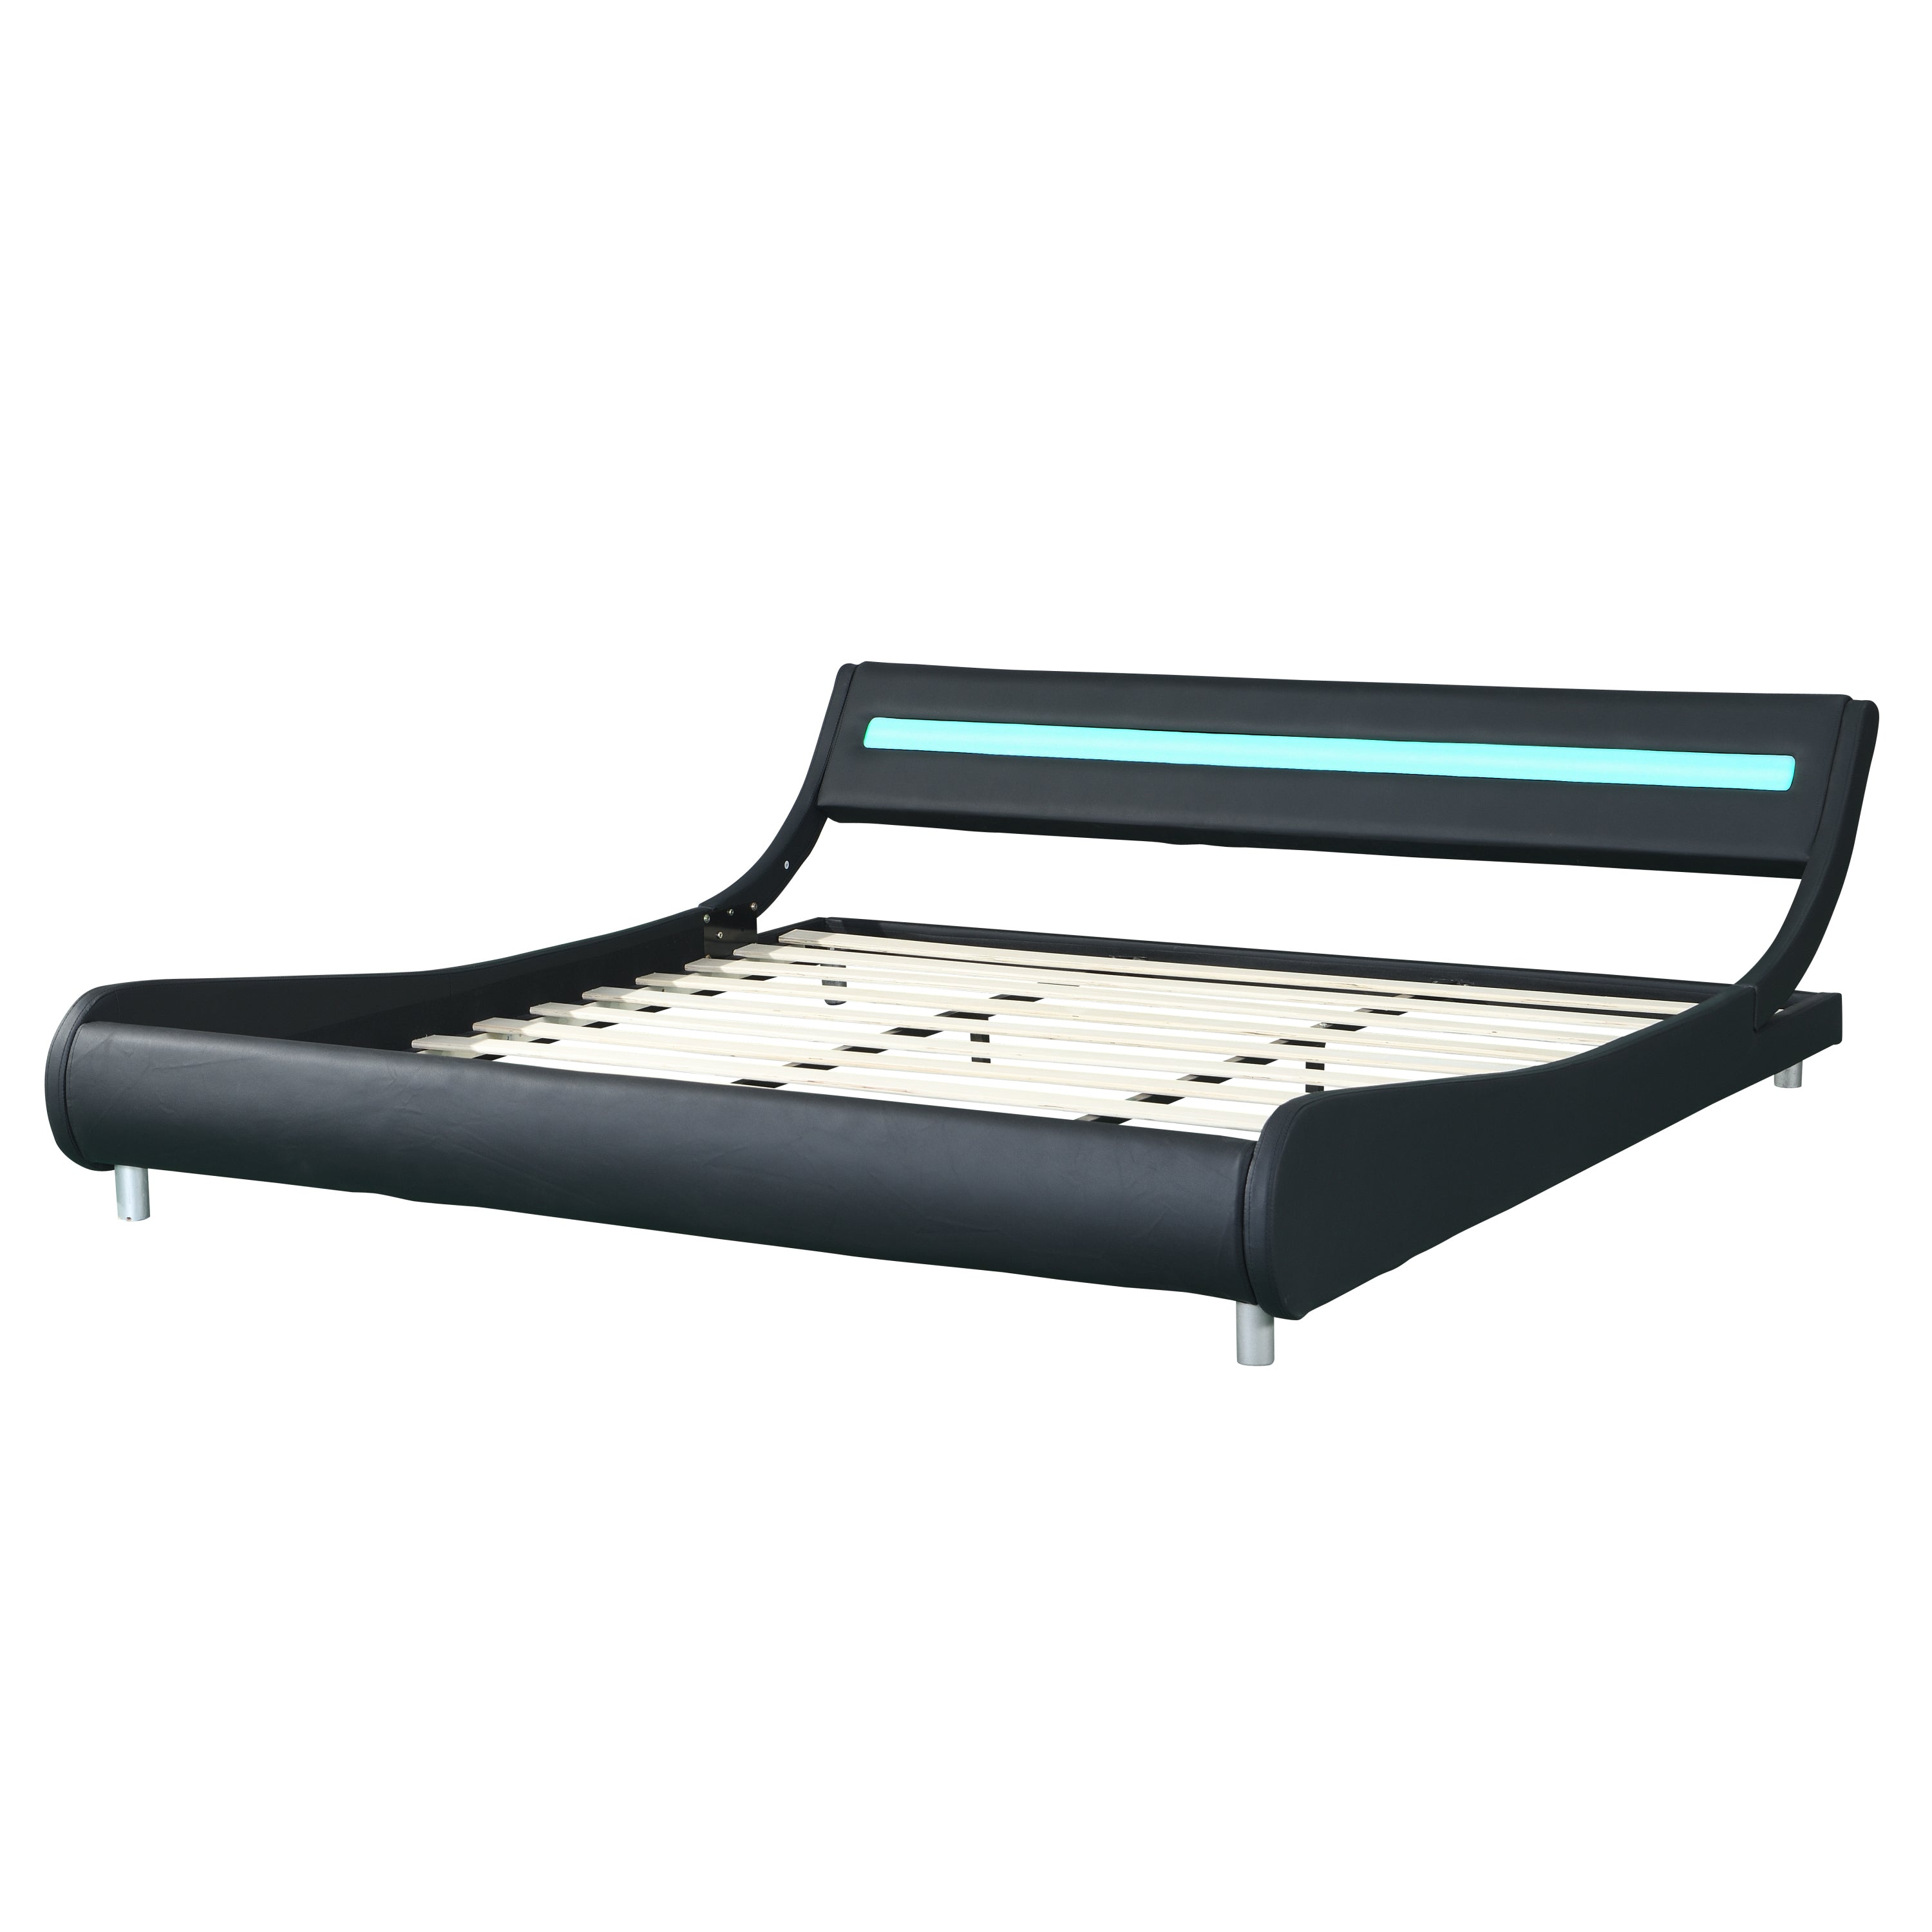 Faux Leather Upholstered Platform Bed Frame with Led Lighting King Size (Black)